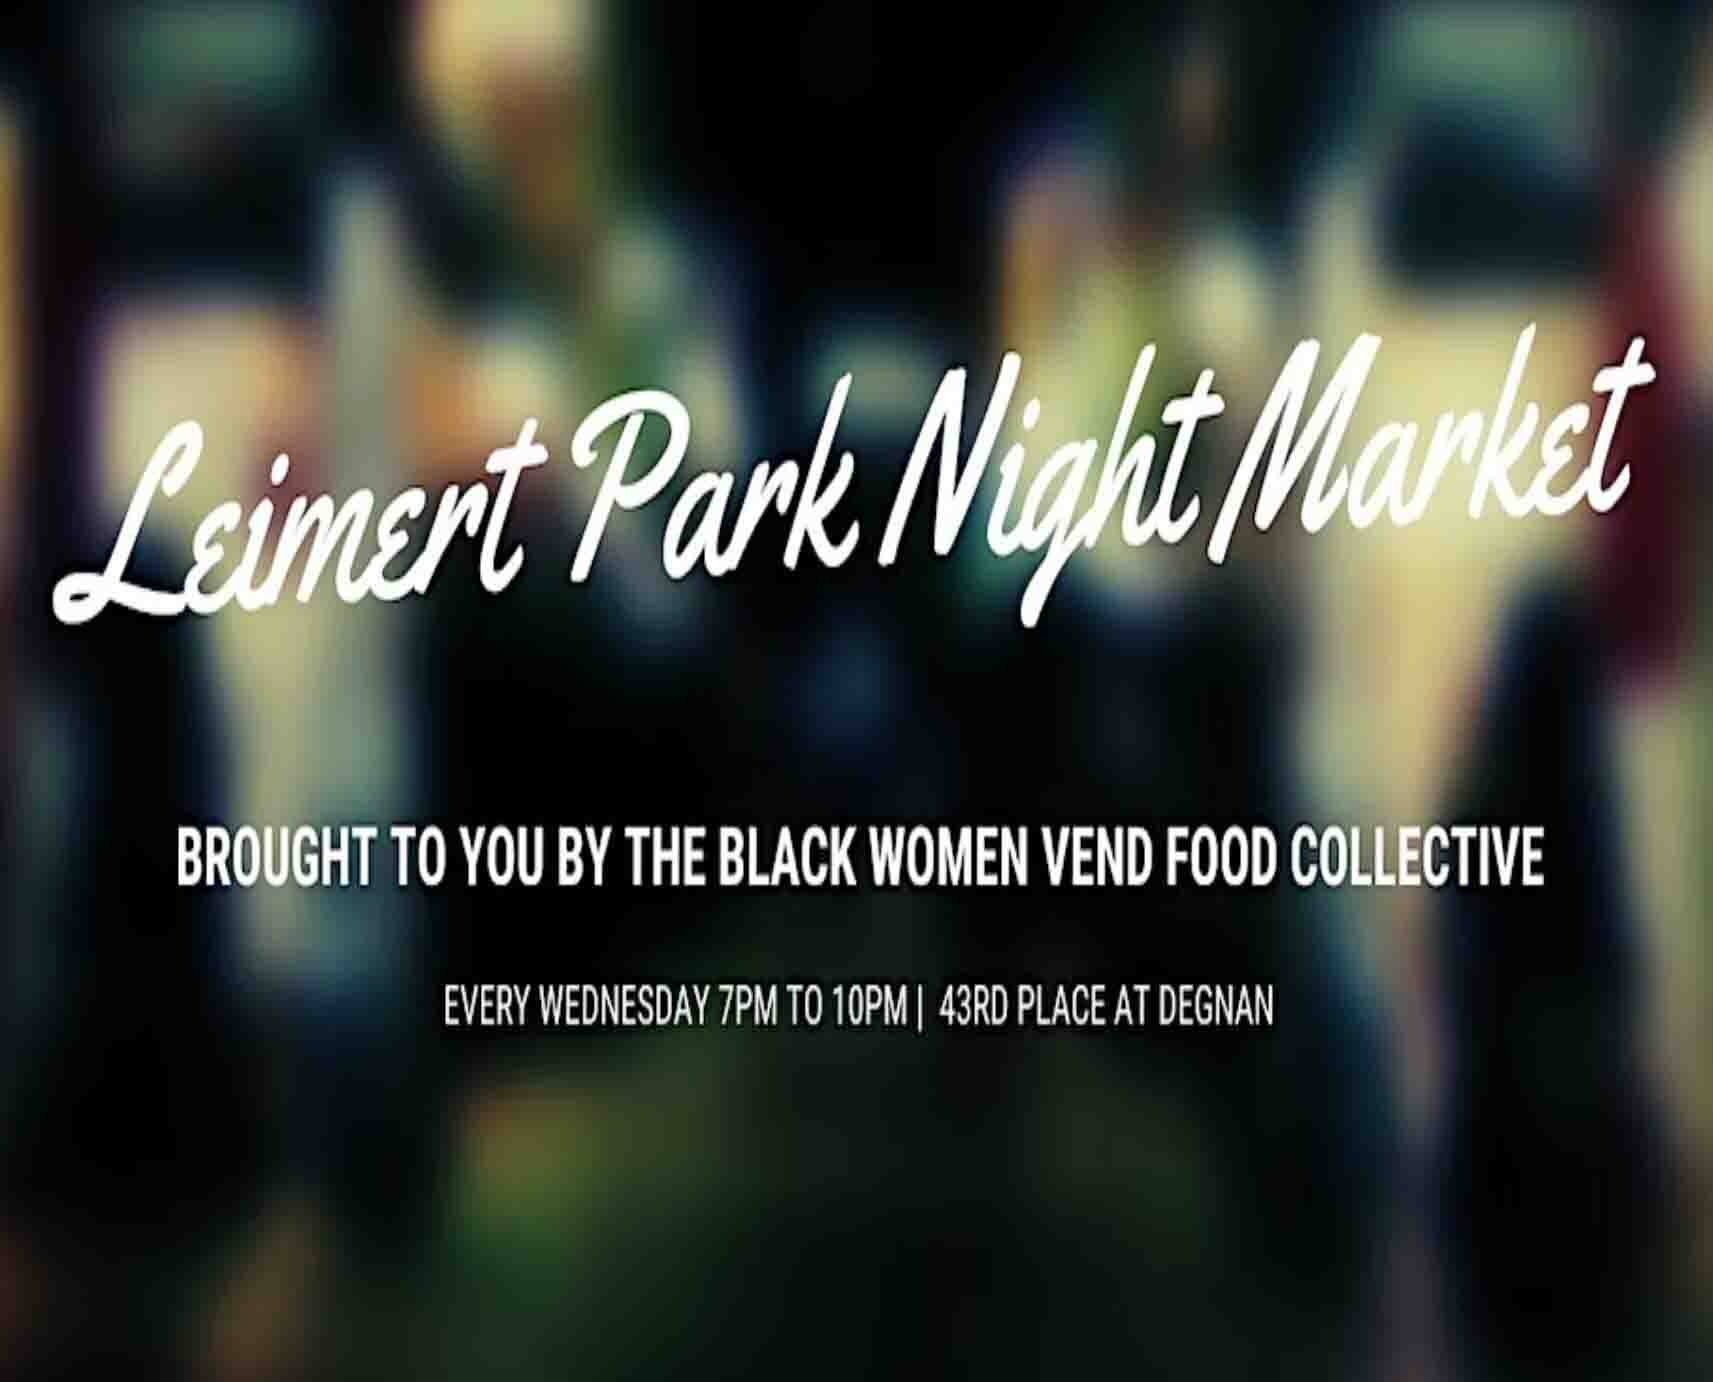 Leimert Park Night Market